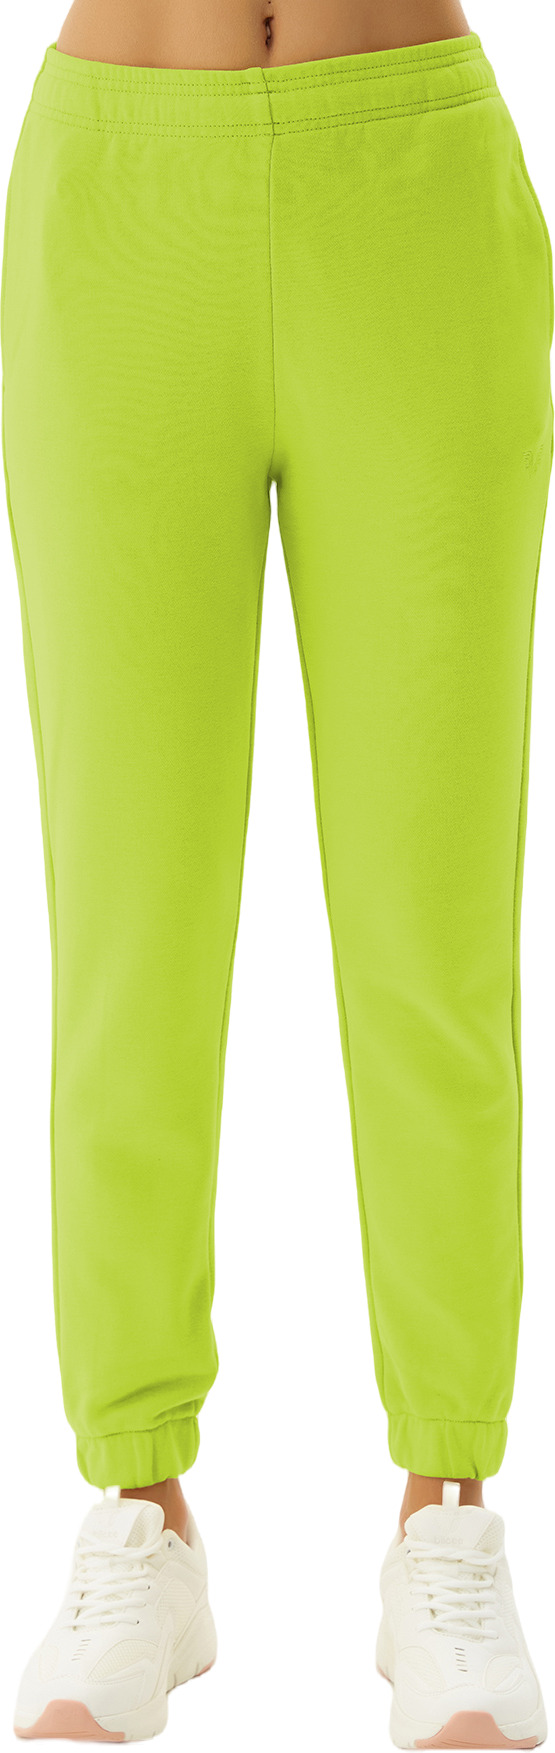 Спортивные брюки женские Bilcee Women Knitting Pants зеленые S